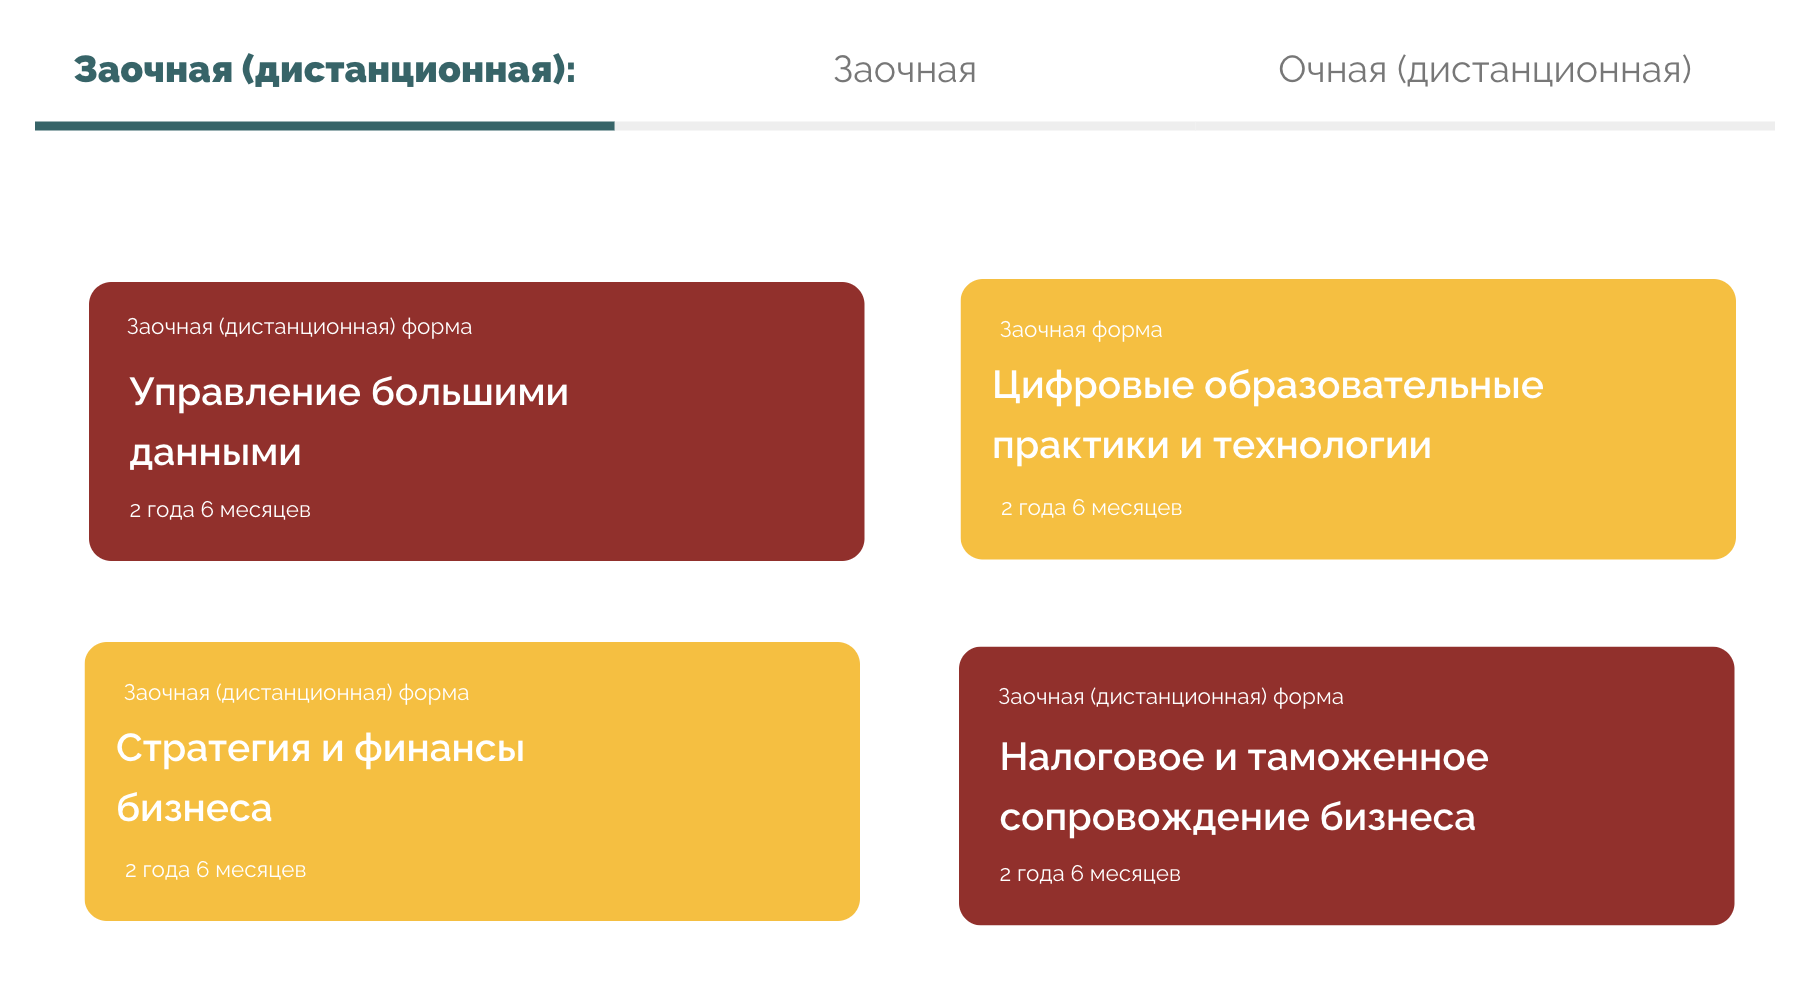 В Финансовом университете есть очные и заочные онлайн-магистратуры, правда, последних намного больше. Источник: dofa.ru